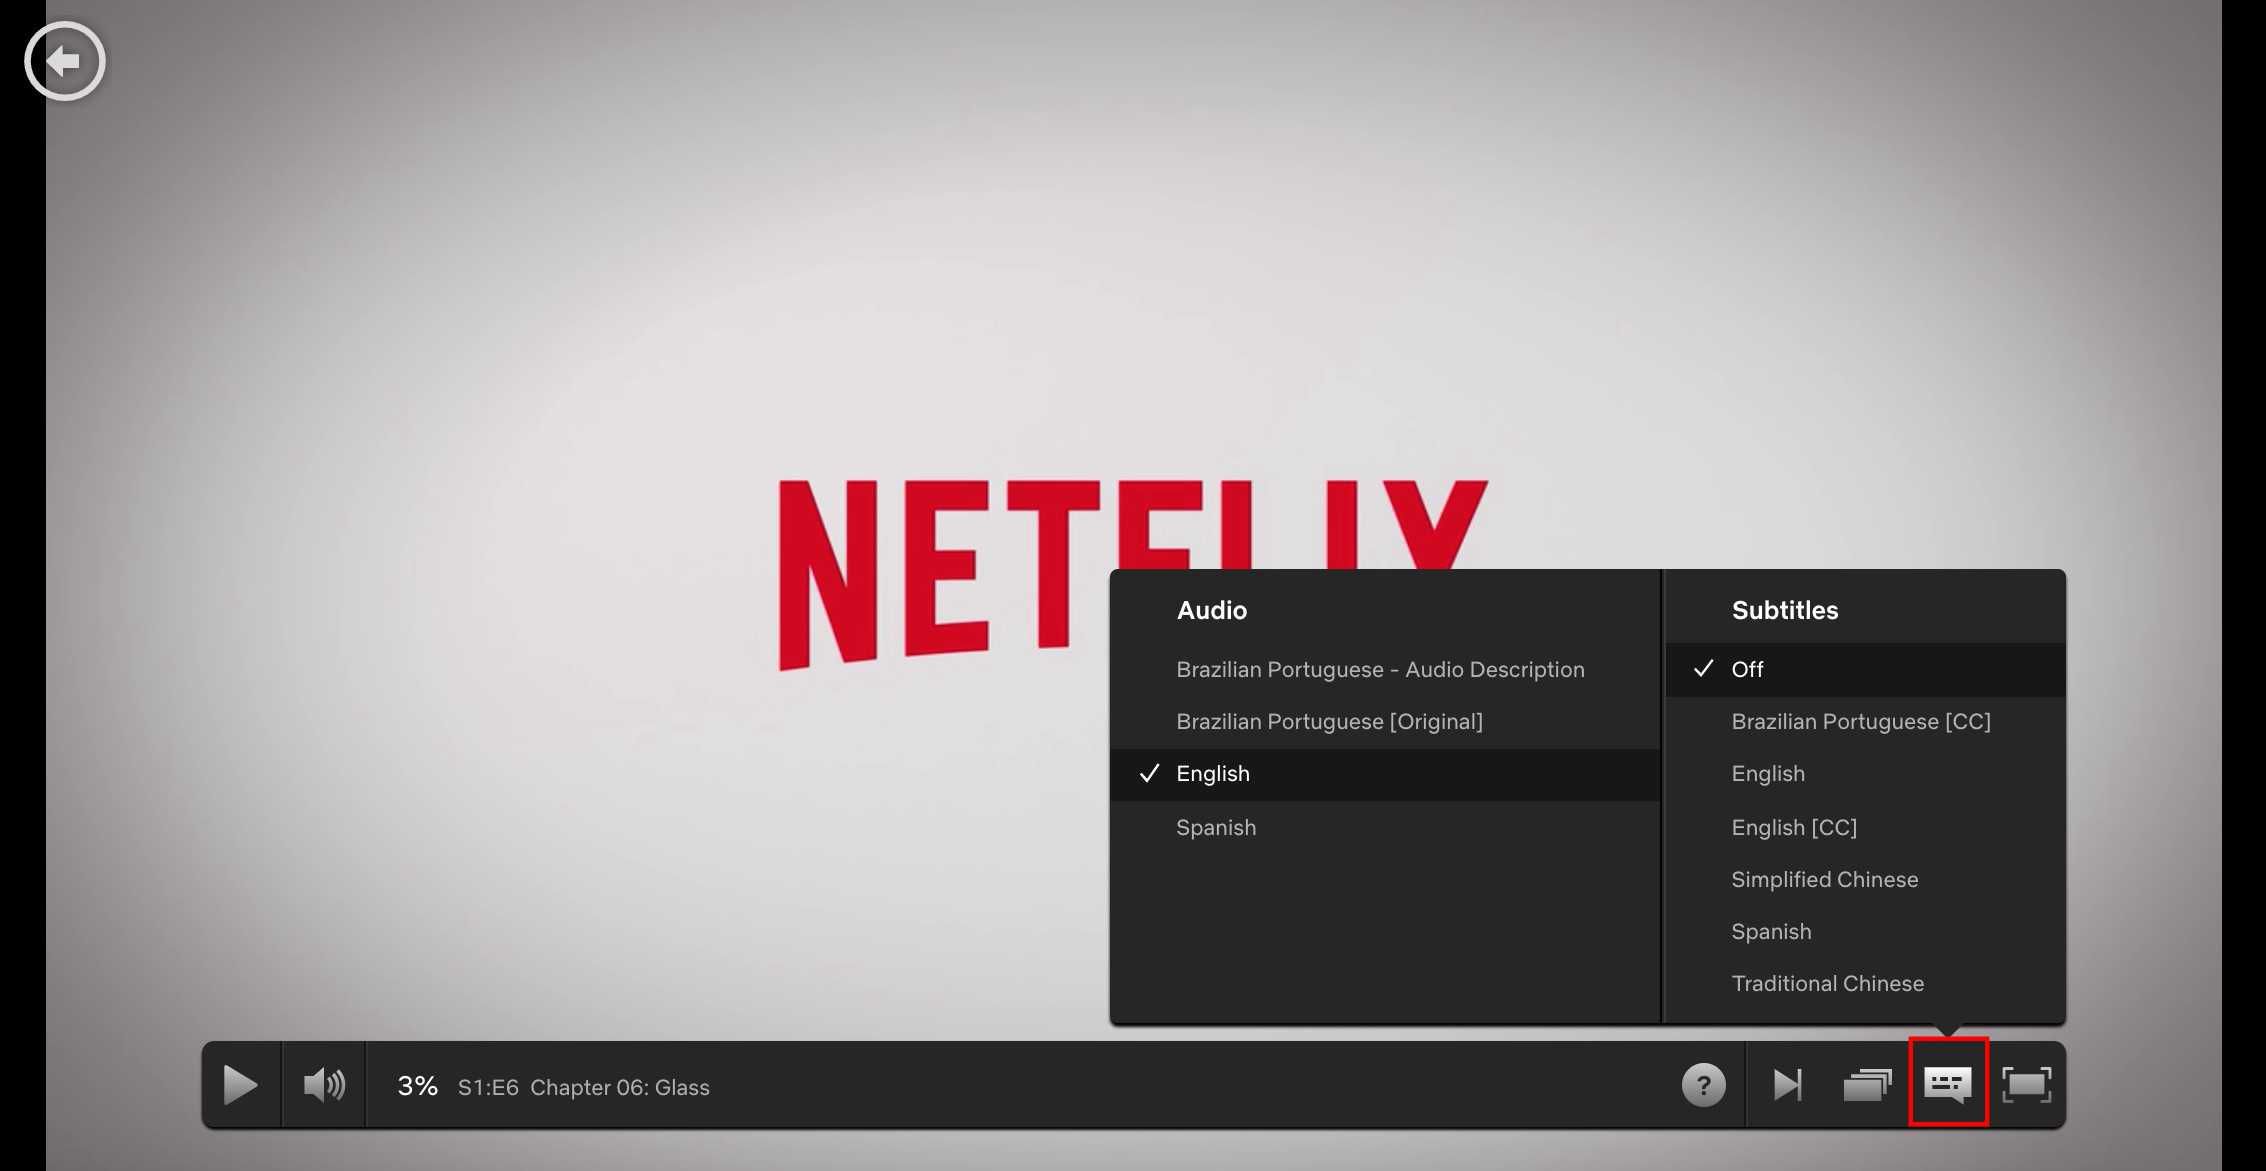 Параметры звука и субтитров накладываются на логотип Netflix.